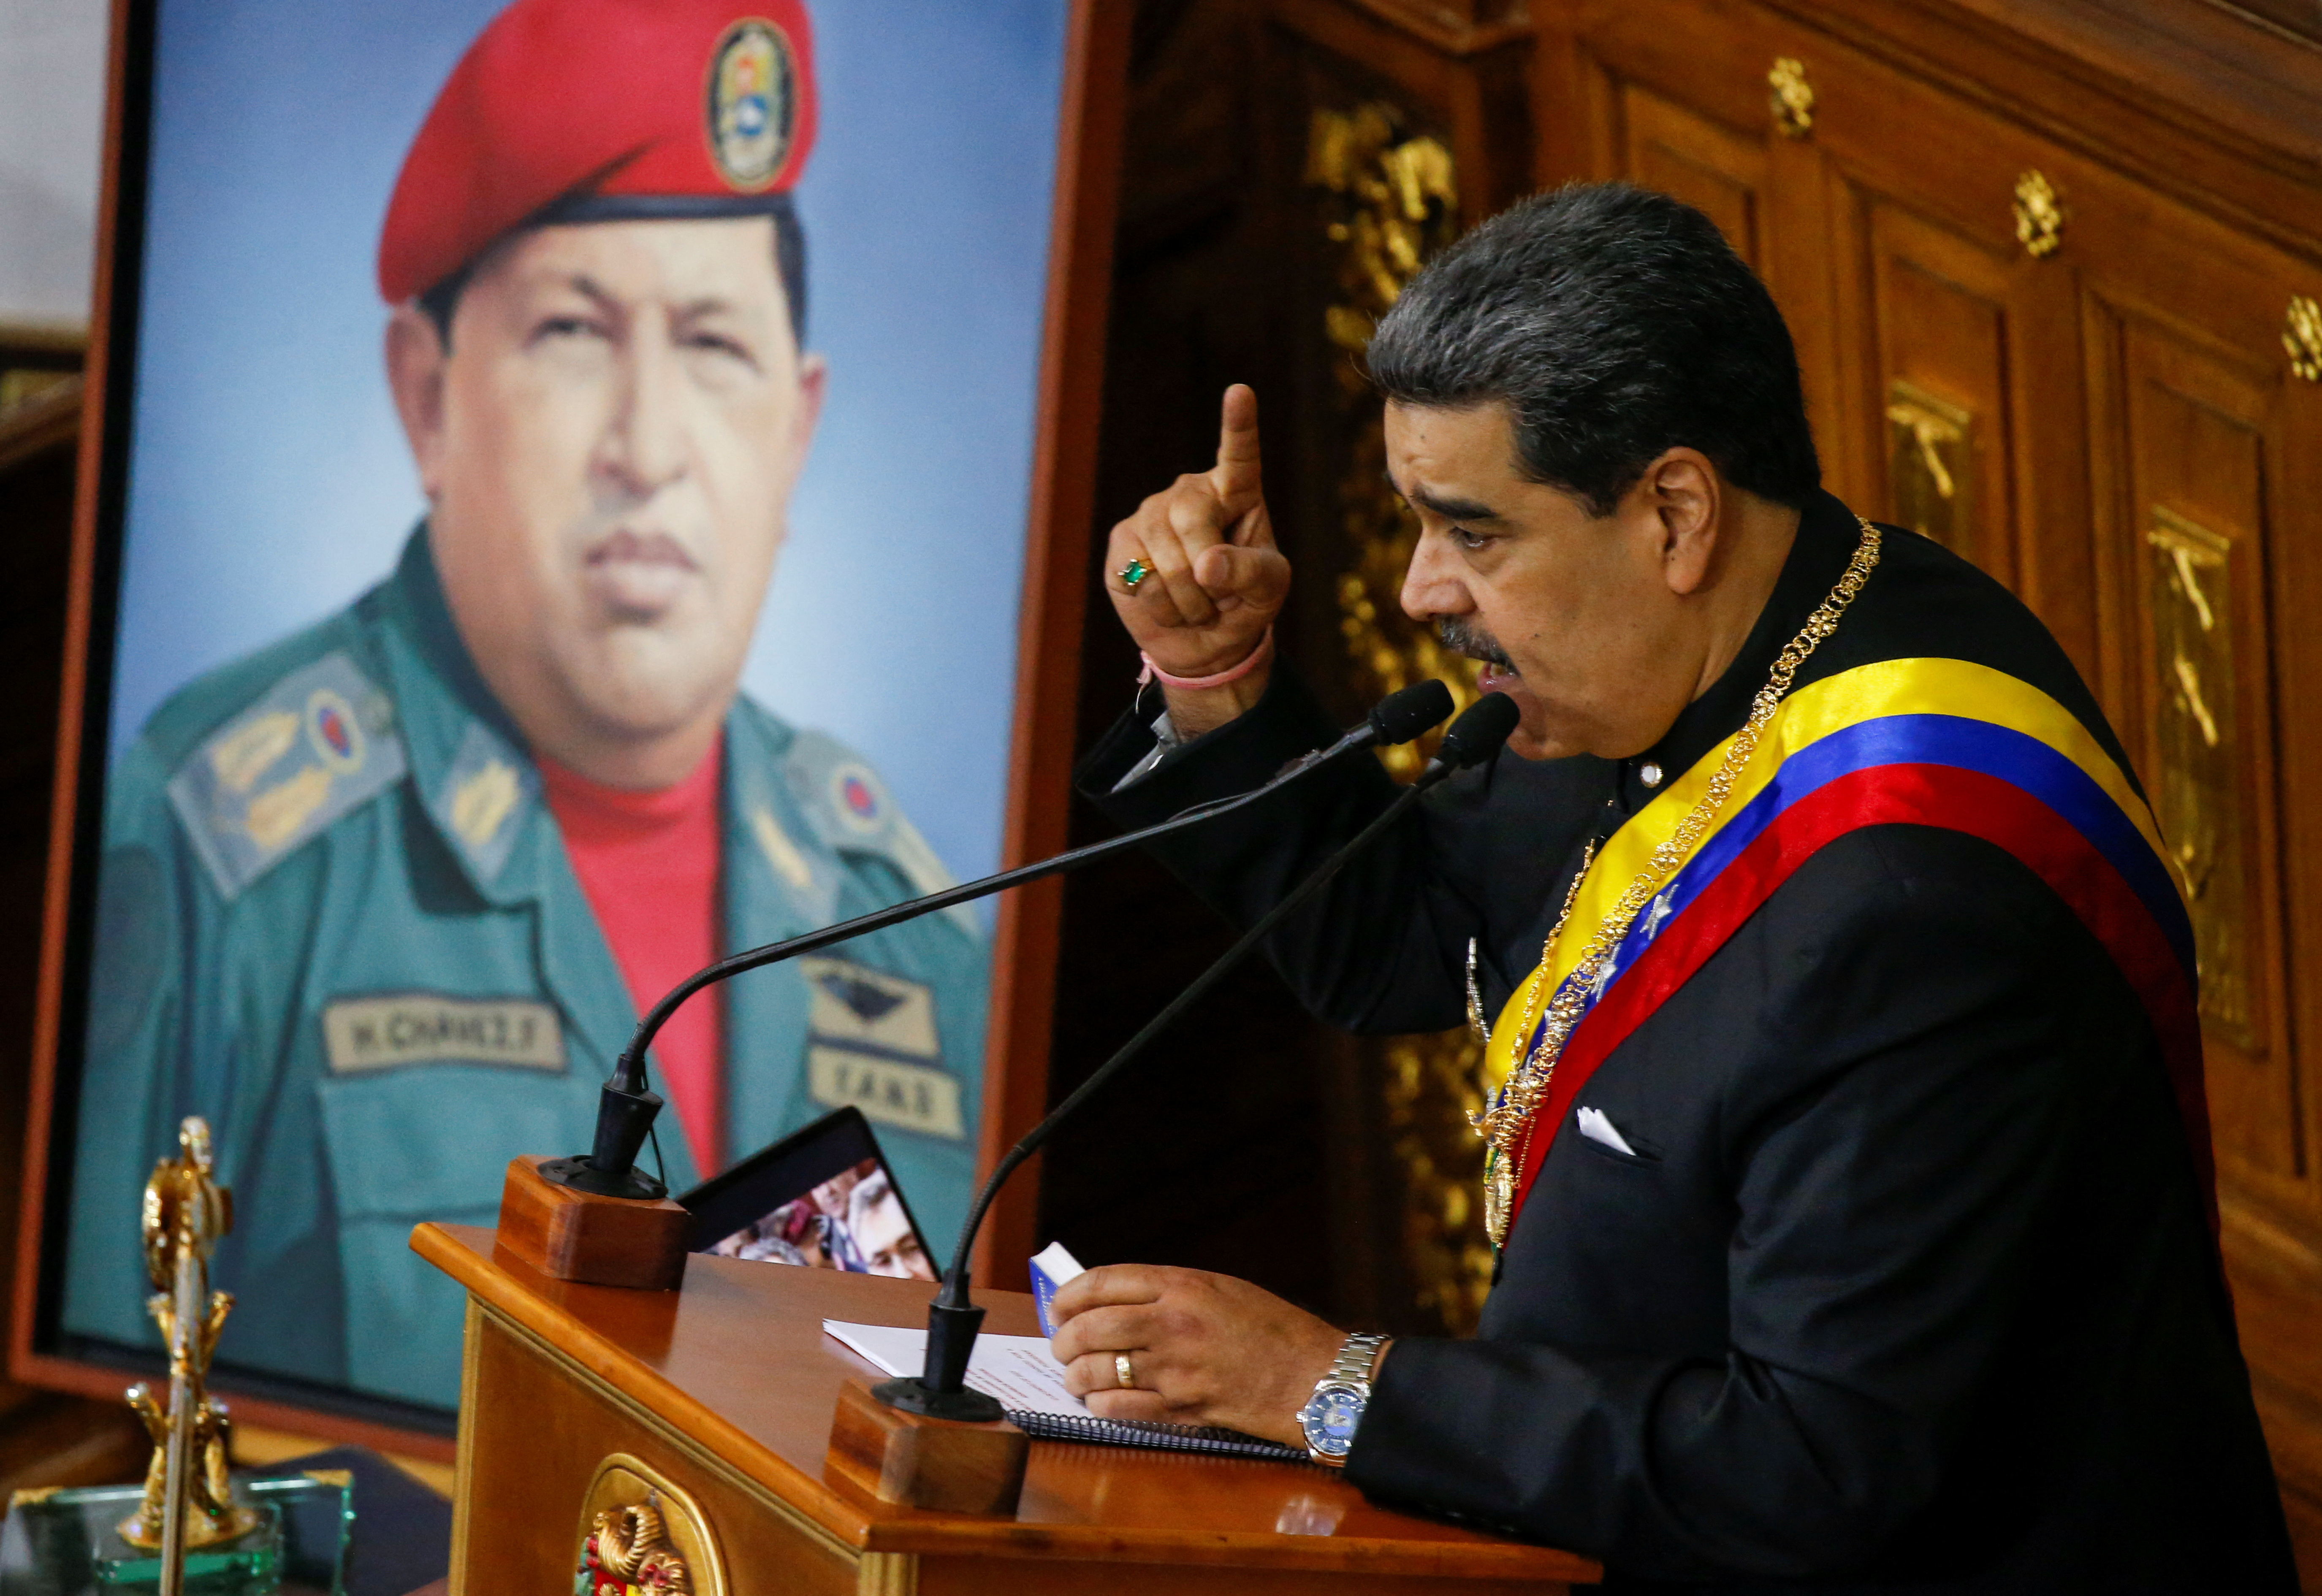 El dictador venezolano Nicolás Maduro dio un mensaje ante la Asamblea Nacional chavista para comprometerse con Vladimir Putin y Xi Jinping (Reuters)